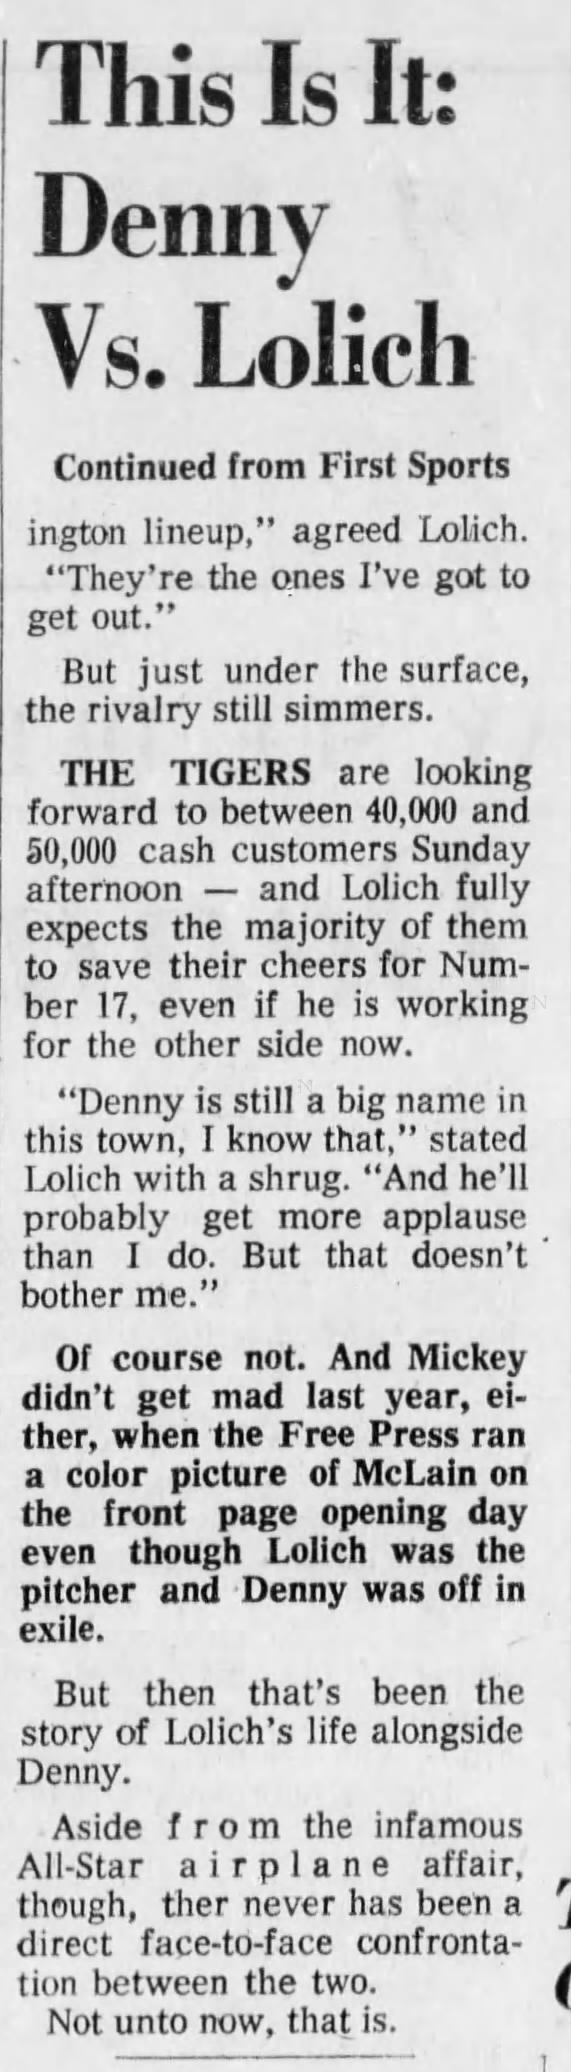 Sun 5/23/71: Lolich vs McLain Freep pre-game coverage (pg 2 of 2)